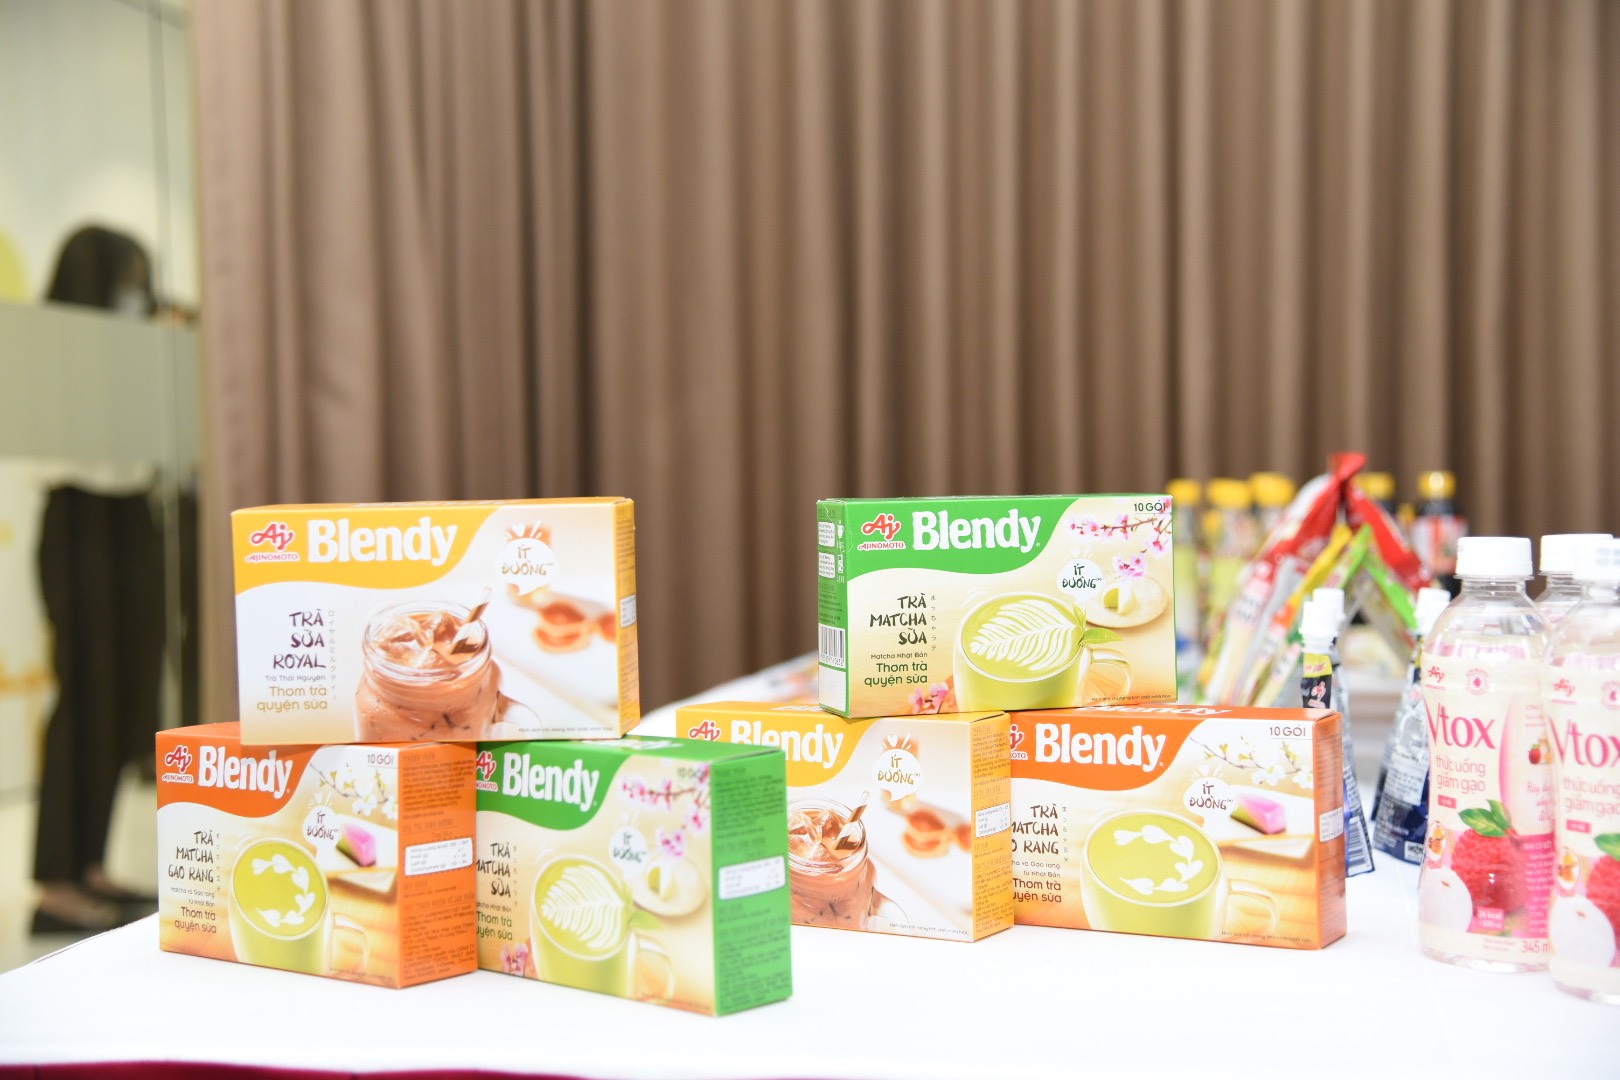 Trà hòa tan Blendy® và hức uống giấm gạo Vtox của Ajinomoto giúp mang đến cảm giác thoải mái, thư giãn và sảng khoái